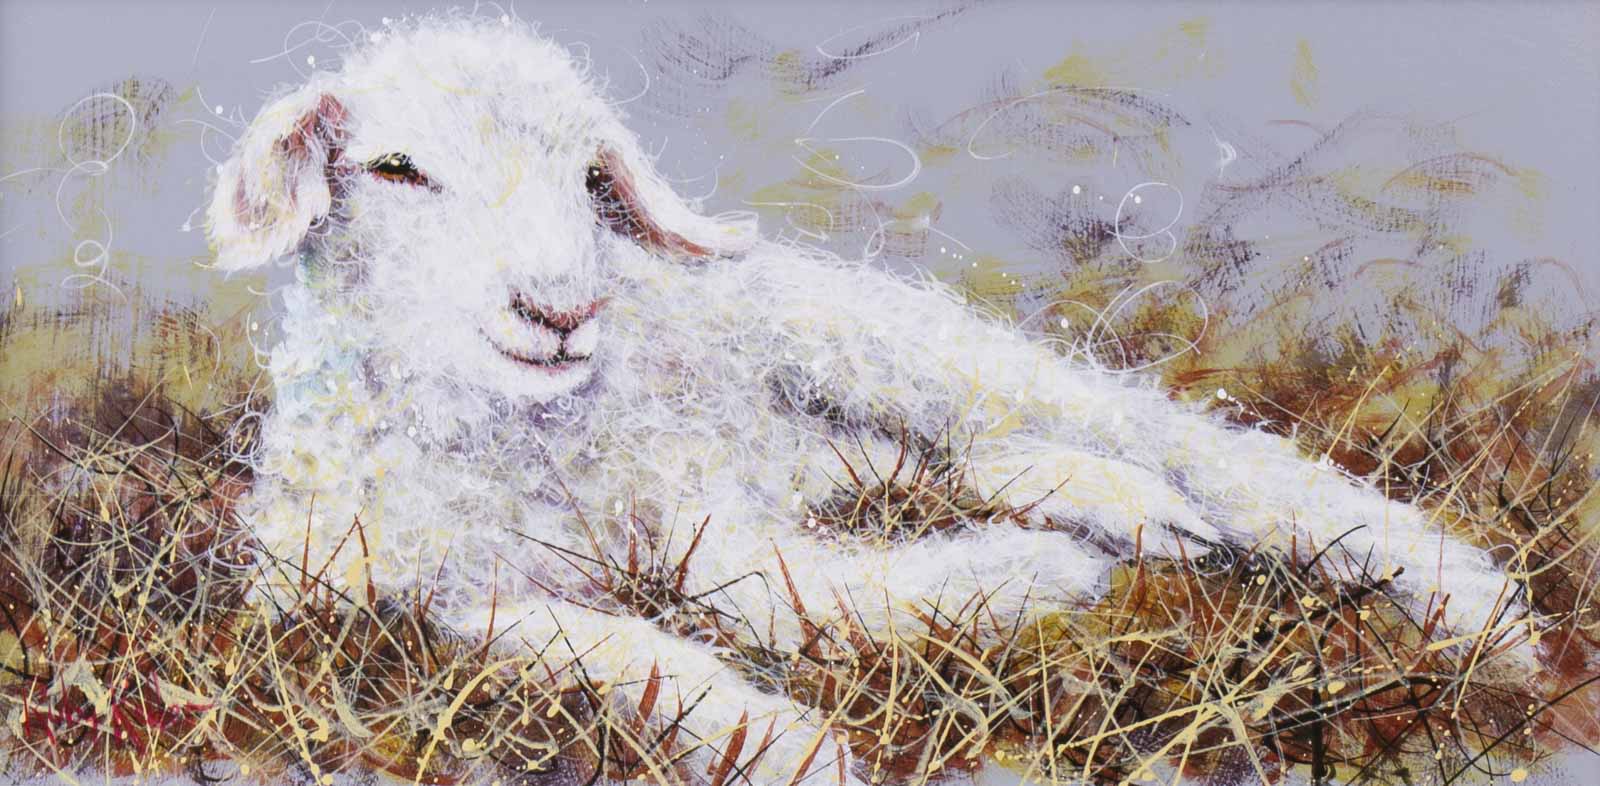 Larry the Lamb